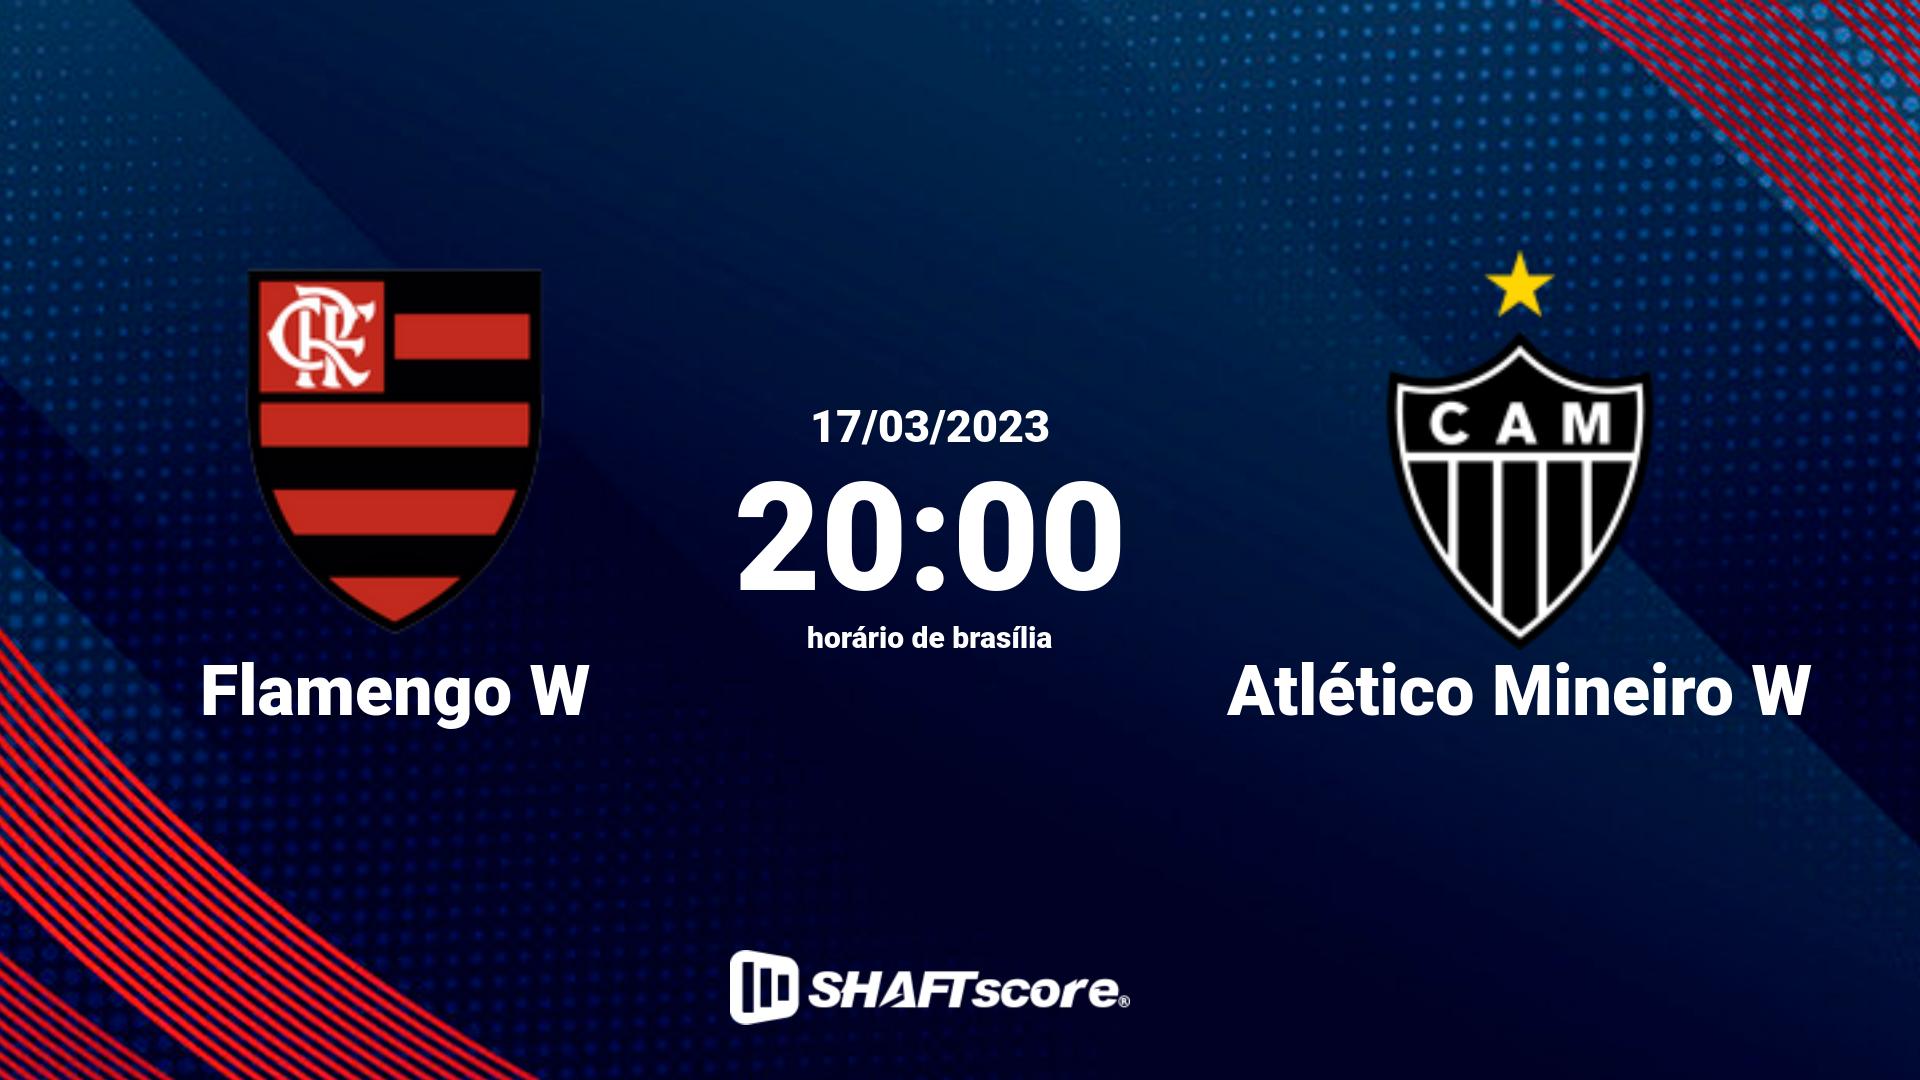 Estatísticas do jogo Flamengo W vs Atlético Mineiro W 17.03 20:00